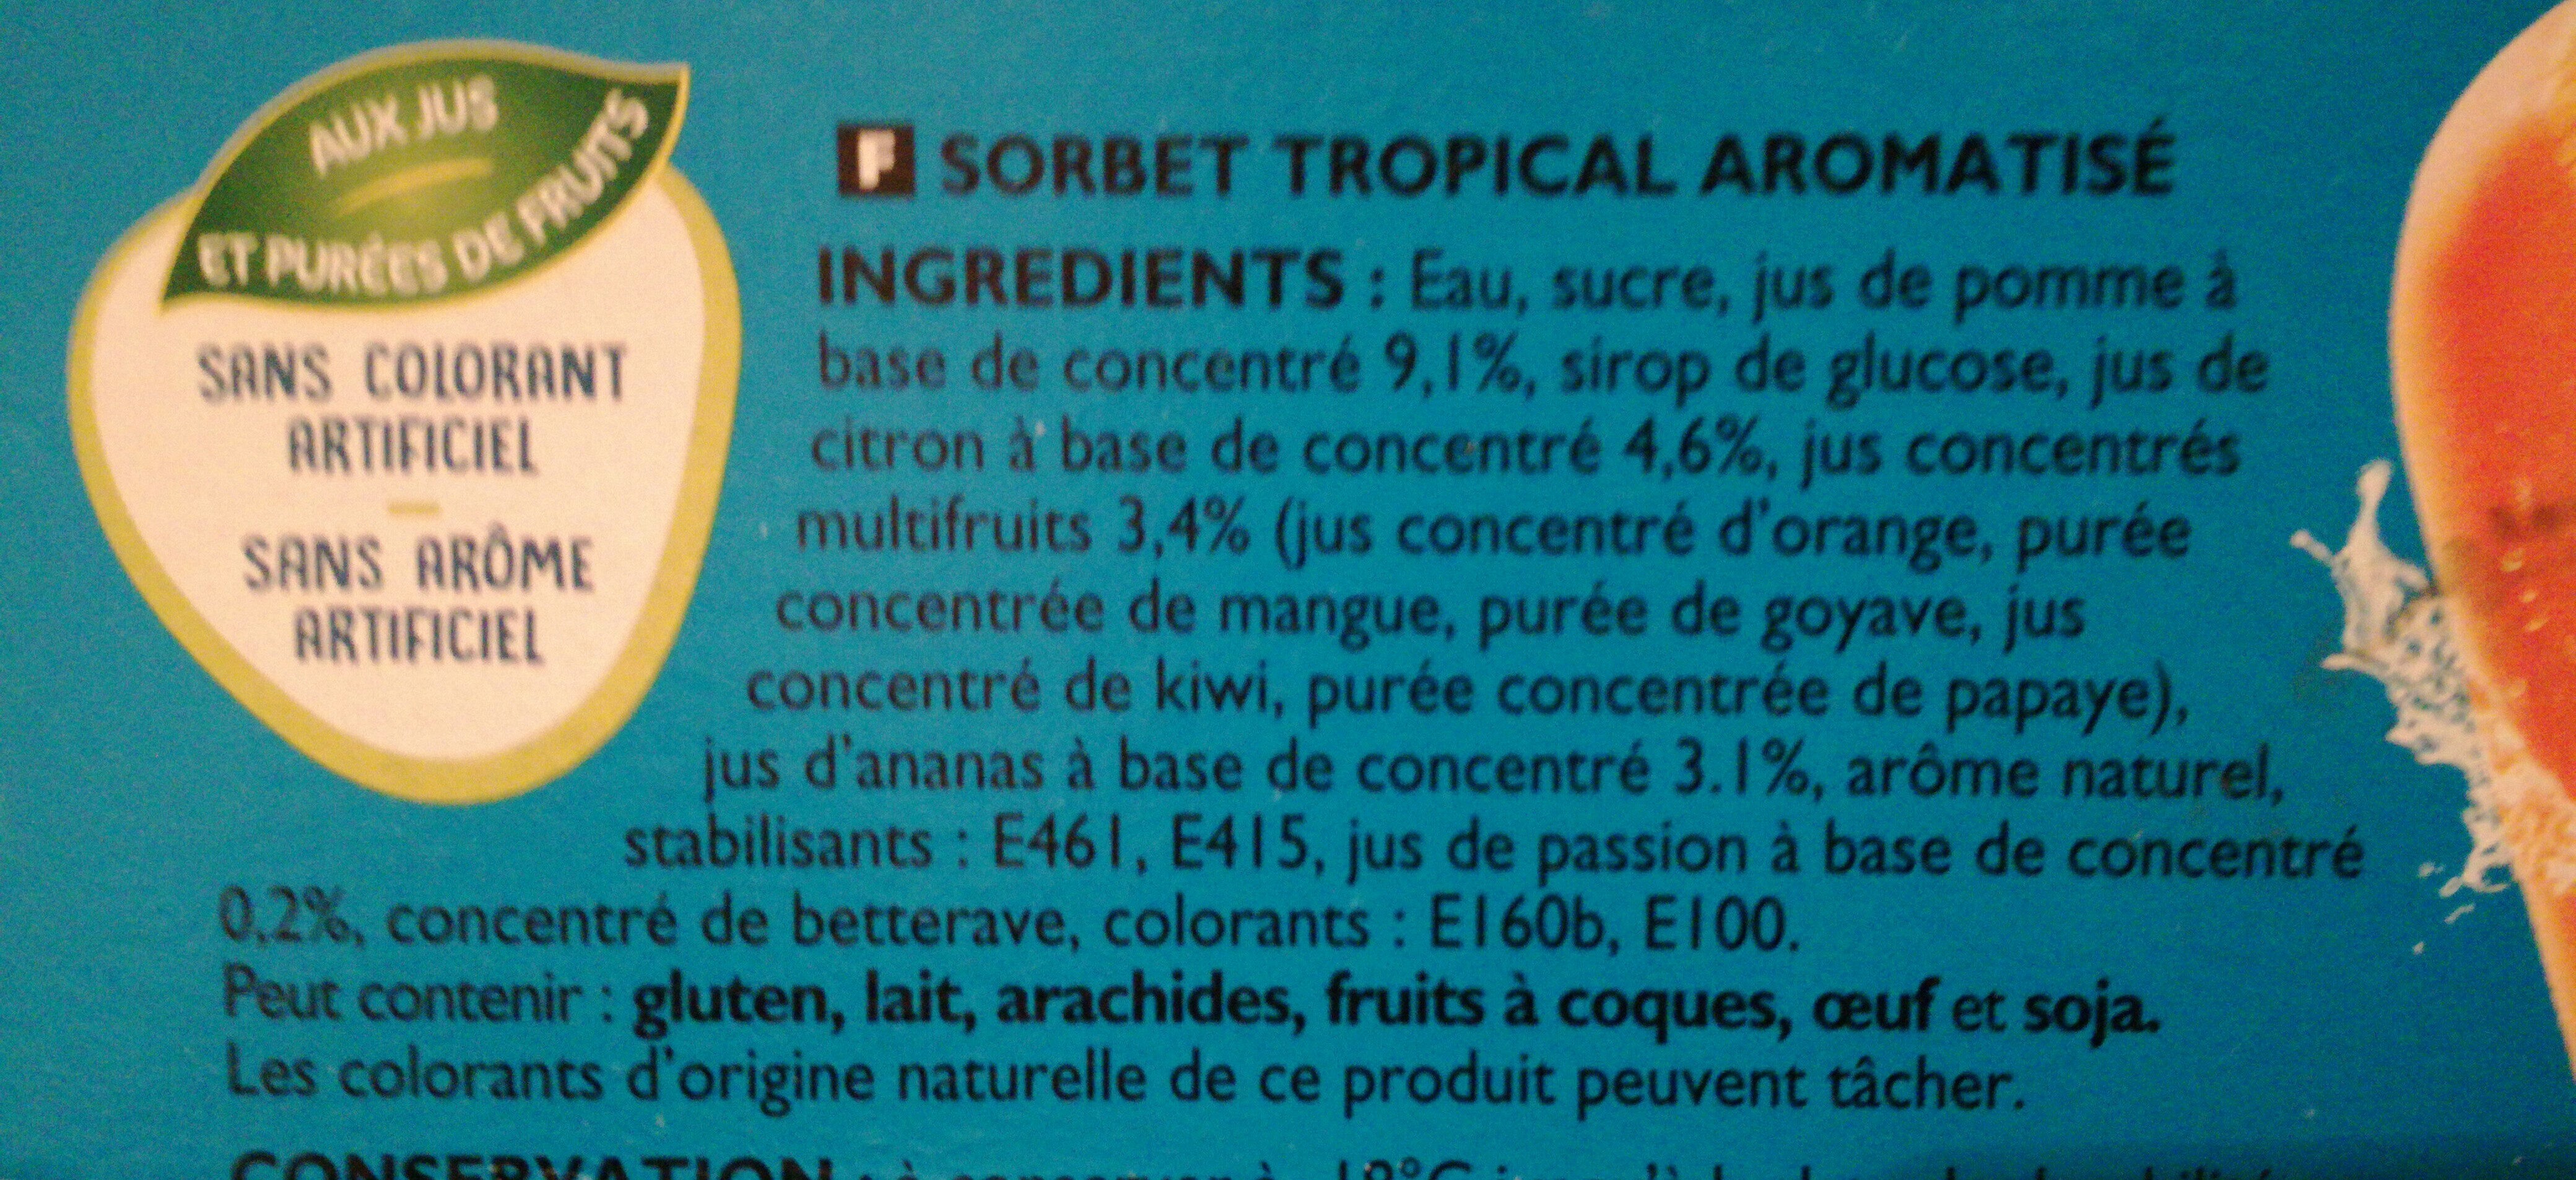 Oasis sorbet Tropical - Ingredients - fr